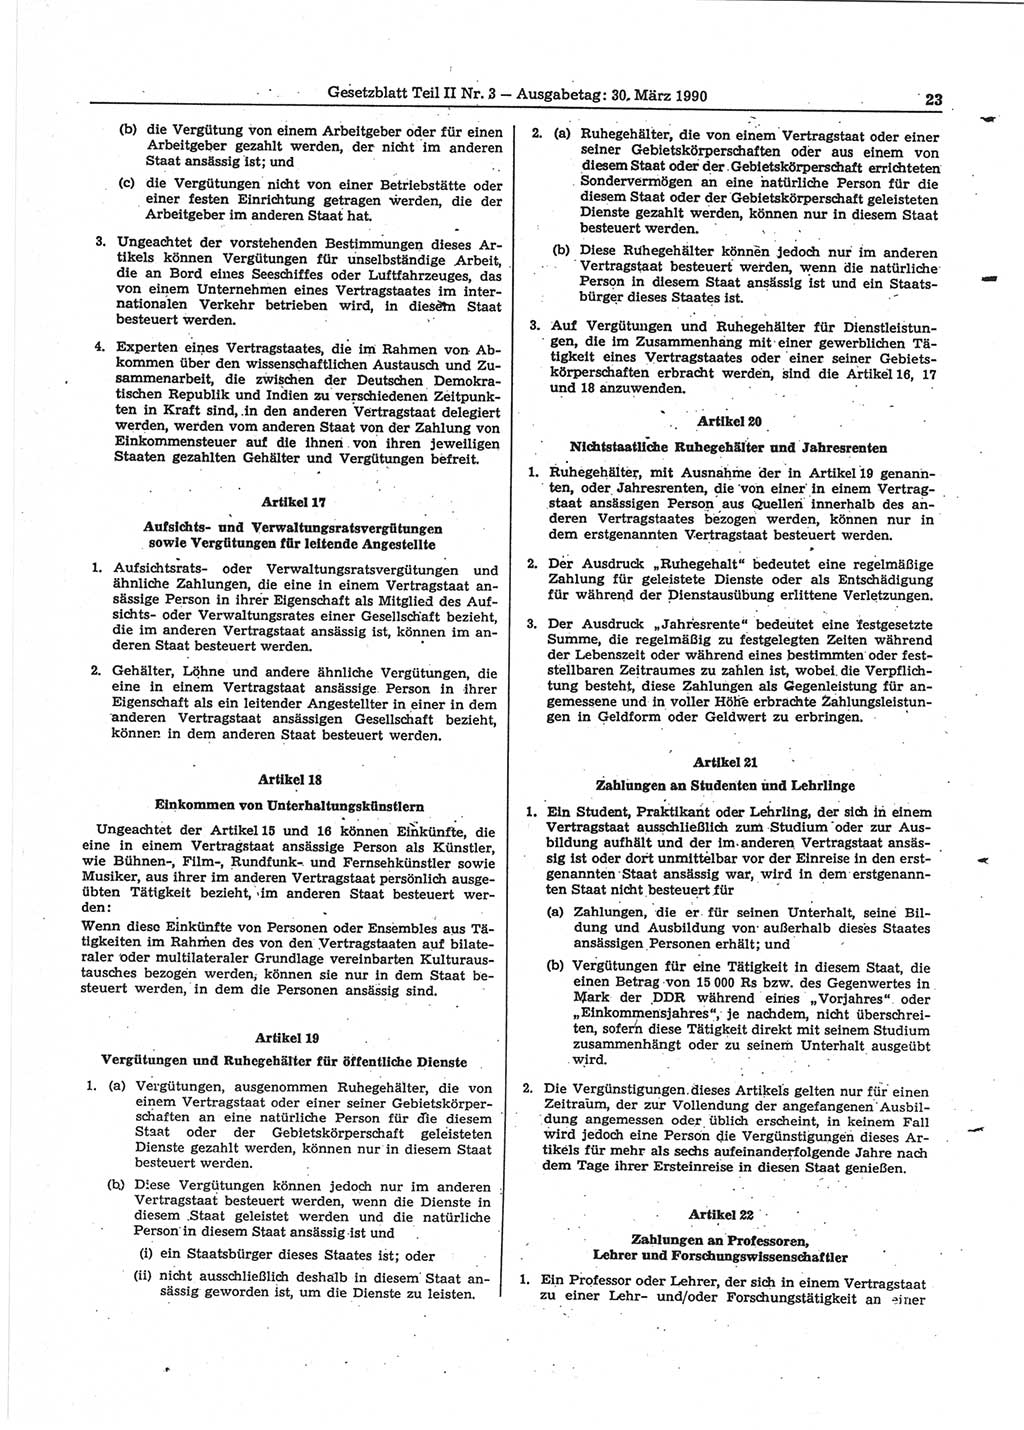 Gesetzblatt (GBl.) der Deutschen Demokratischen Republik (DDR) Teil ⅠⅠ 1990, Seite 23 (GBl. DDR ⅠⅠ 1990, S. 23)